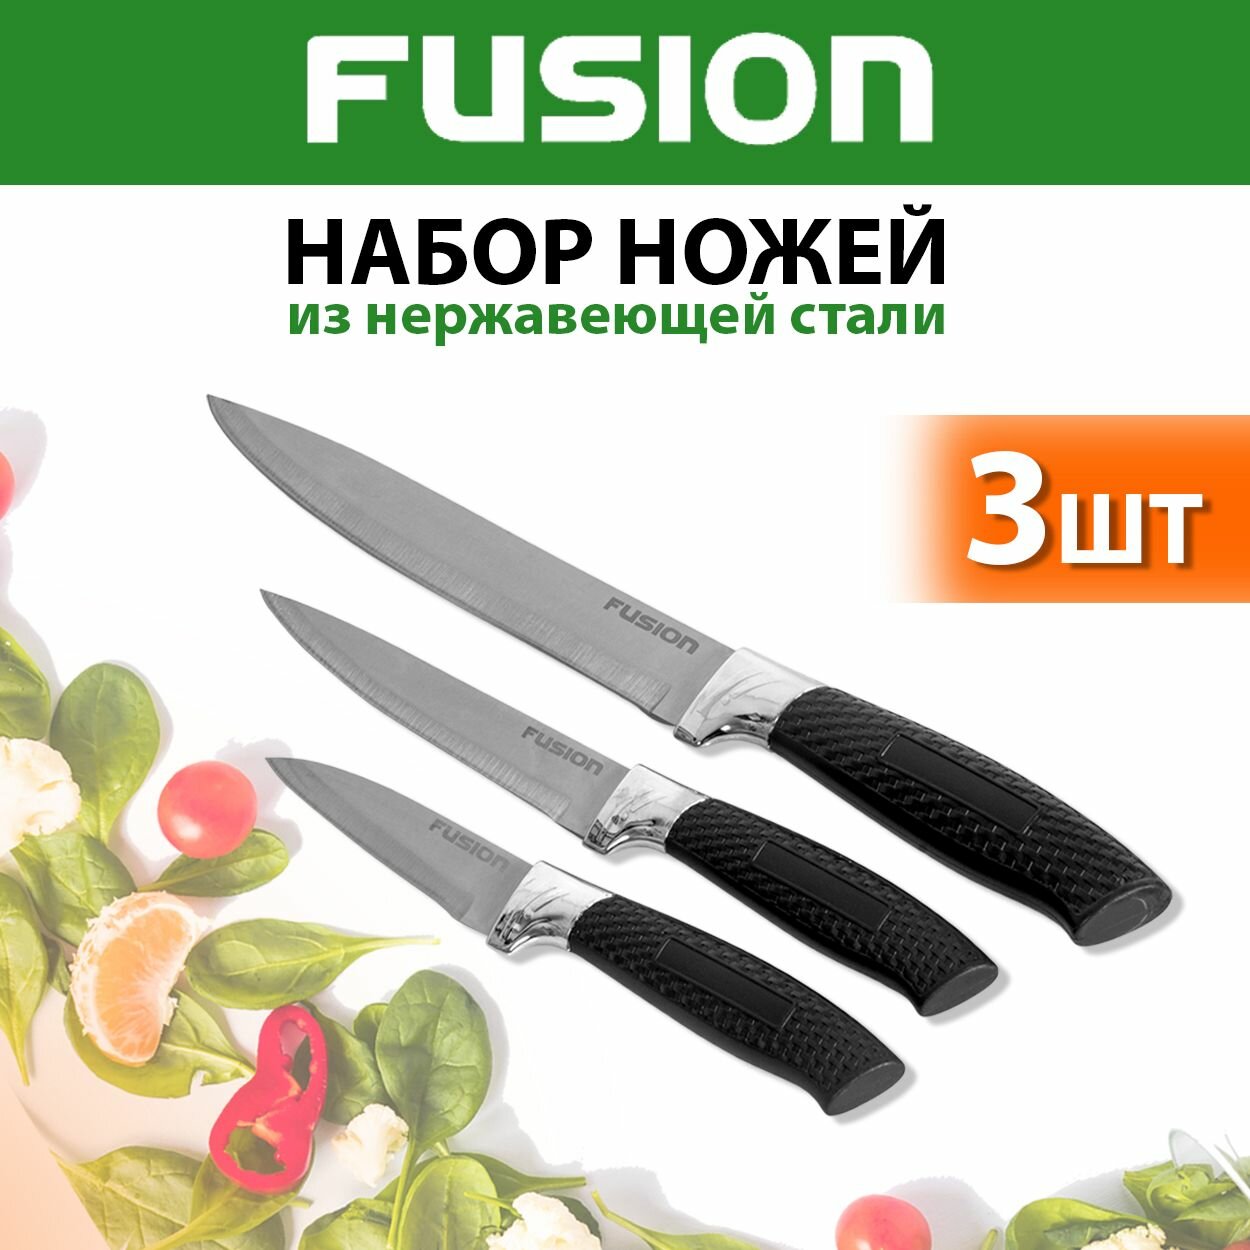 Набор кухонных ножей 3 шт Fusion SK3004, black (нож для чистки и нарезки овощей и фруктов, универсальный, нож для нарезки-слайсер)